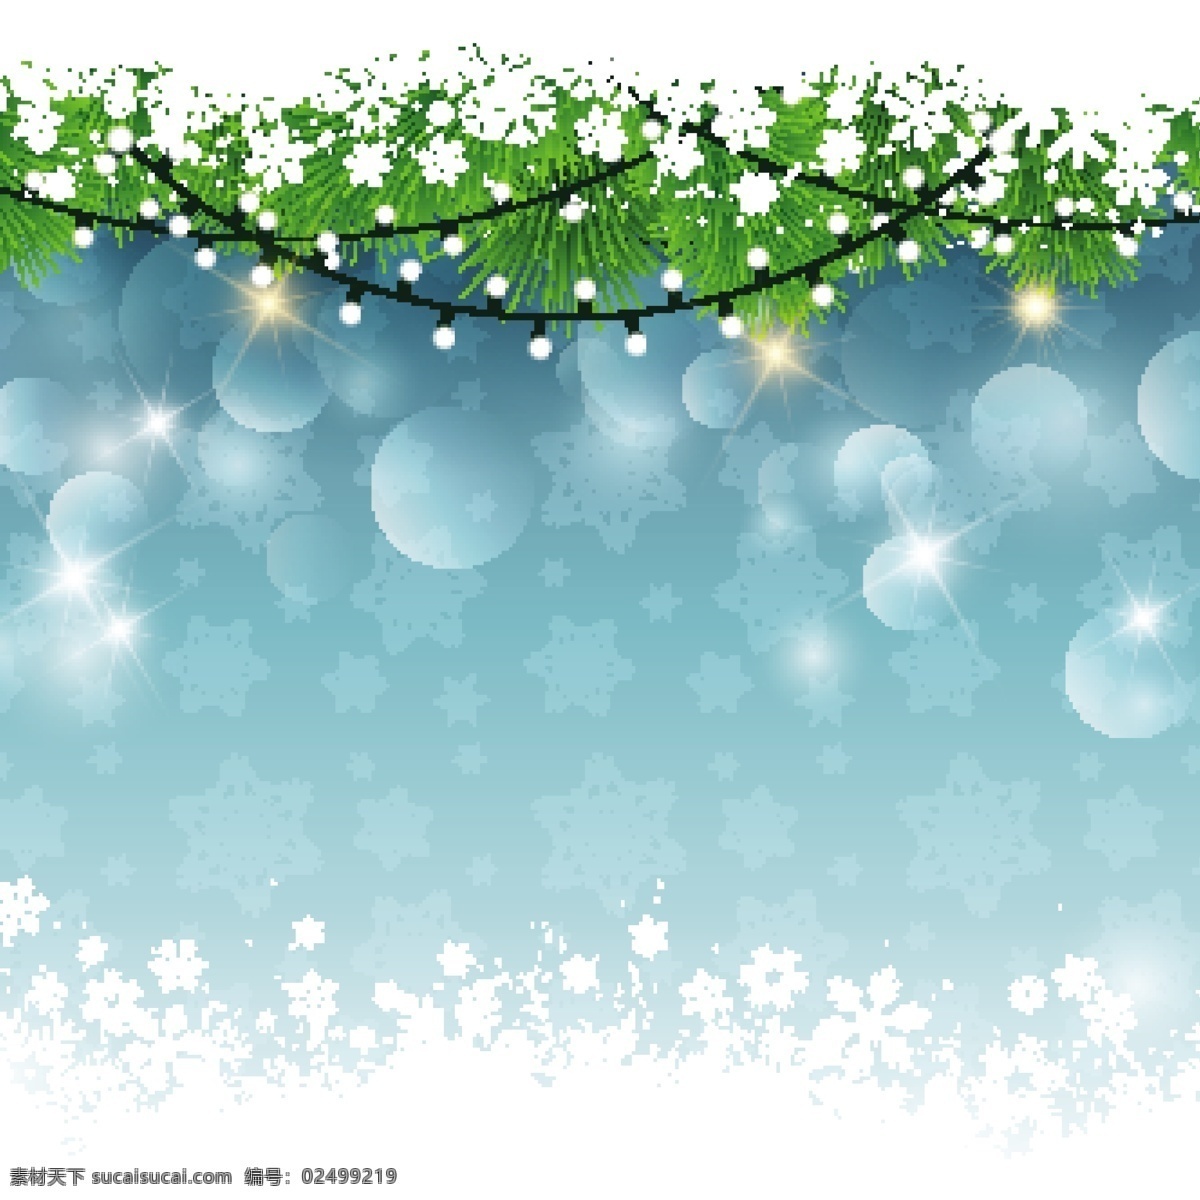 圣诞 灯 一个 下雪 背景 虚化 圣诞节 蓝色的背景 圣诞快乐 冬天 庆祝 雪花 节日装饰 灯光 背景虚化 装饰 节日快乐 圣诞灯 青色 天蓝色